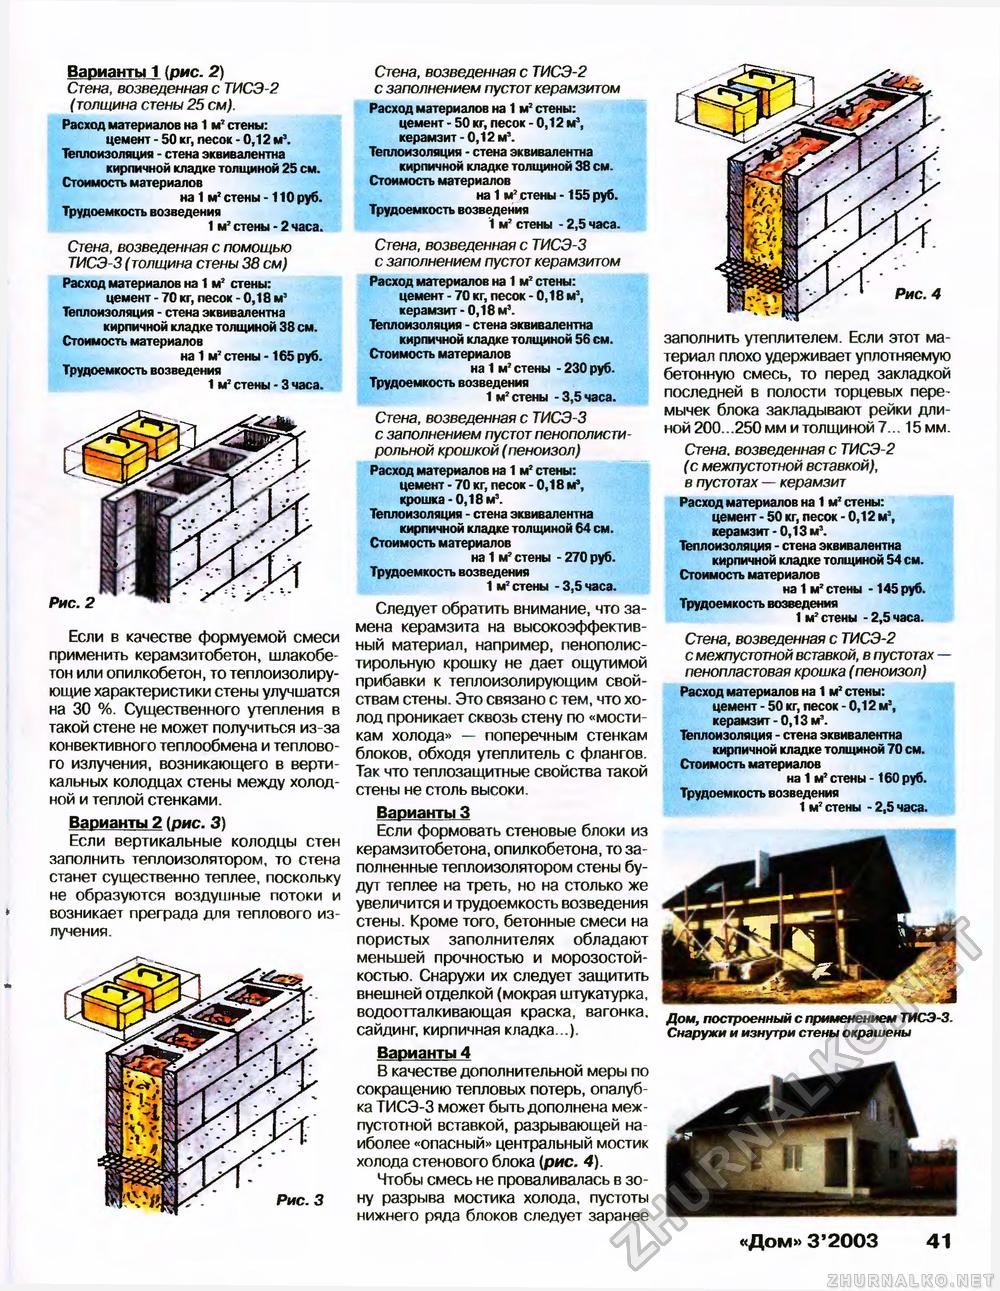 Дом 2003-03, страница 41